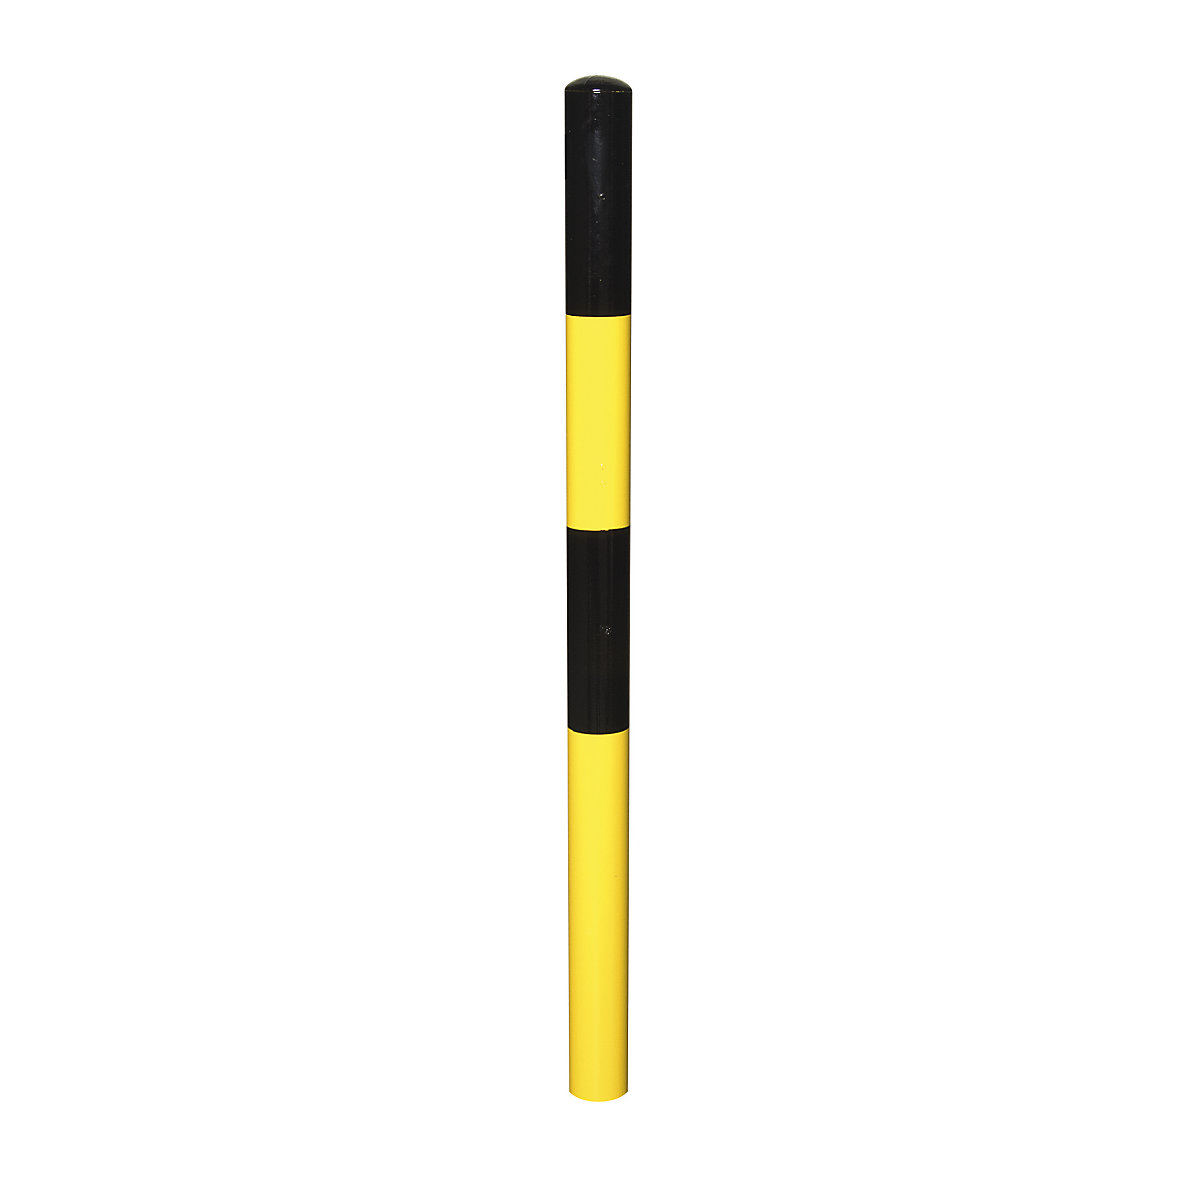 Sperrpfosten, zum Einbetonieren, Ø 60 mm, schwarz-gelb lackiert, 2 Ösen